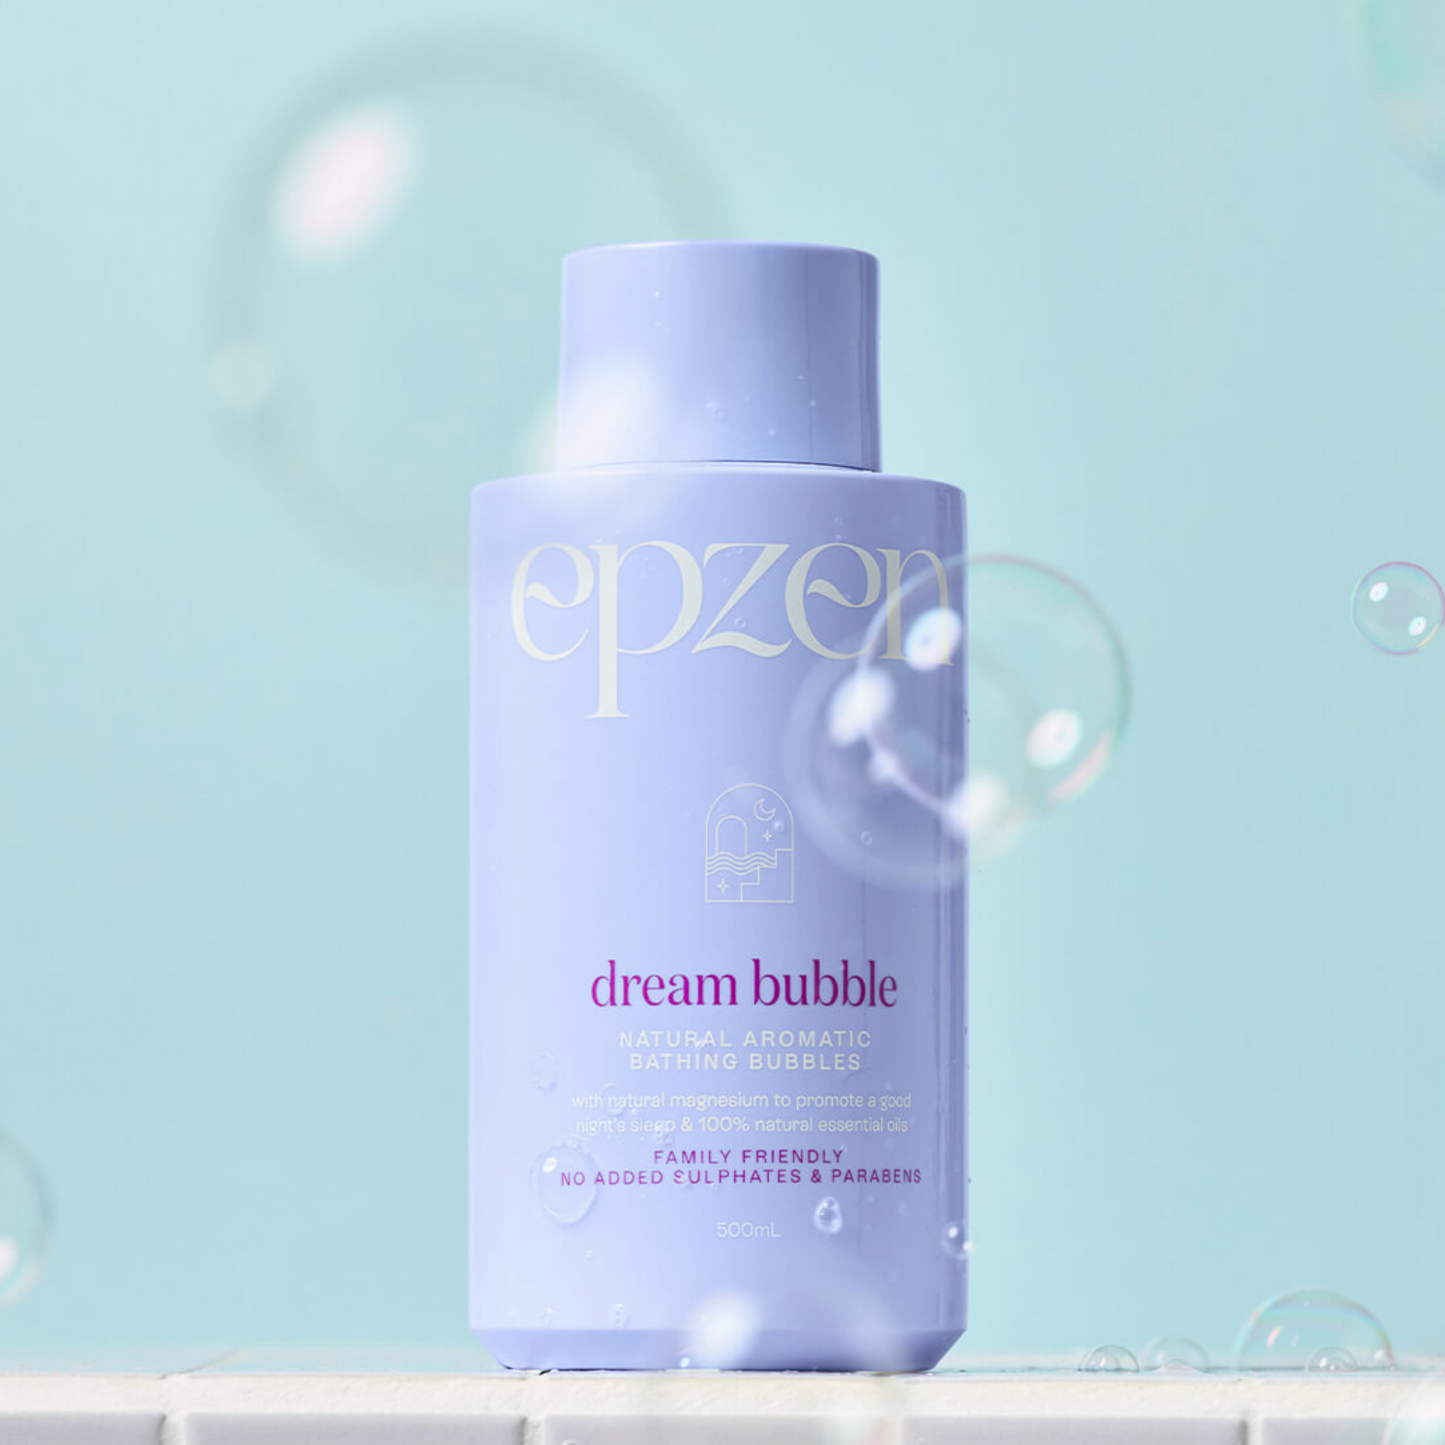 EpZen Natural Aromatic Bathing Bubbles 500ml, Dream Bubble